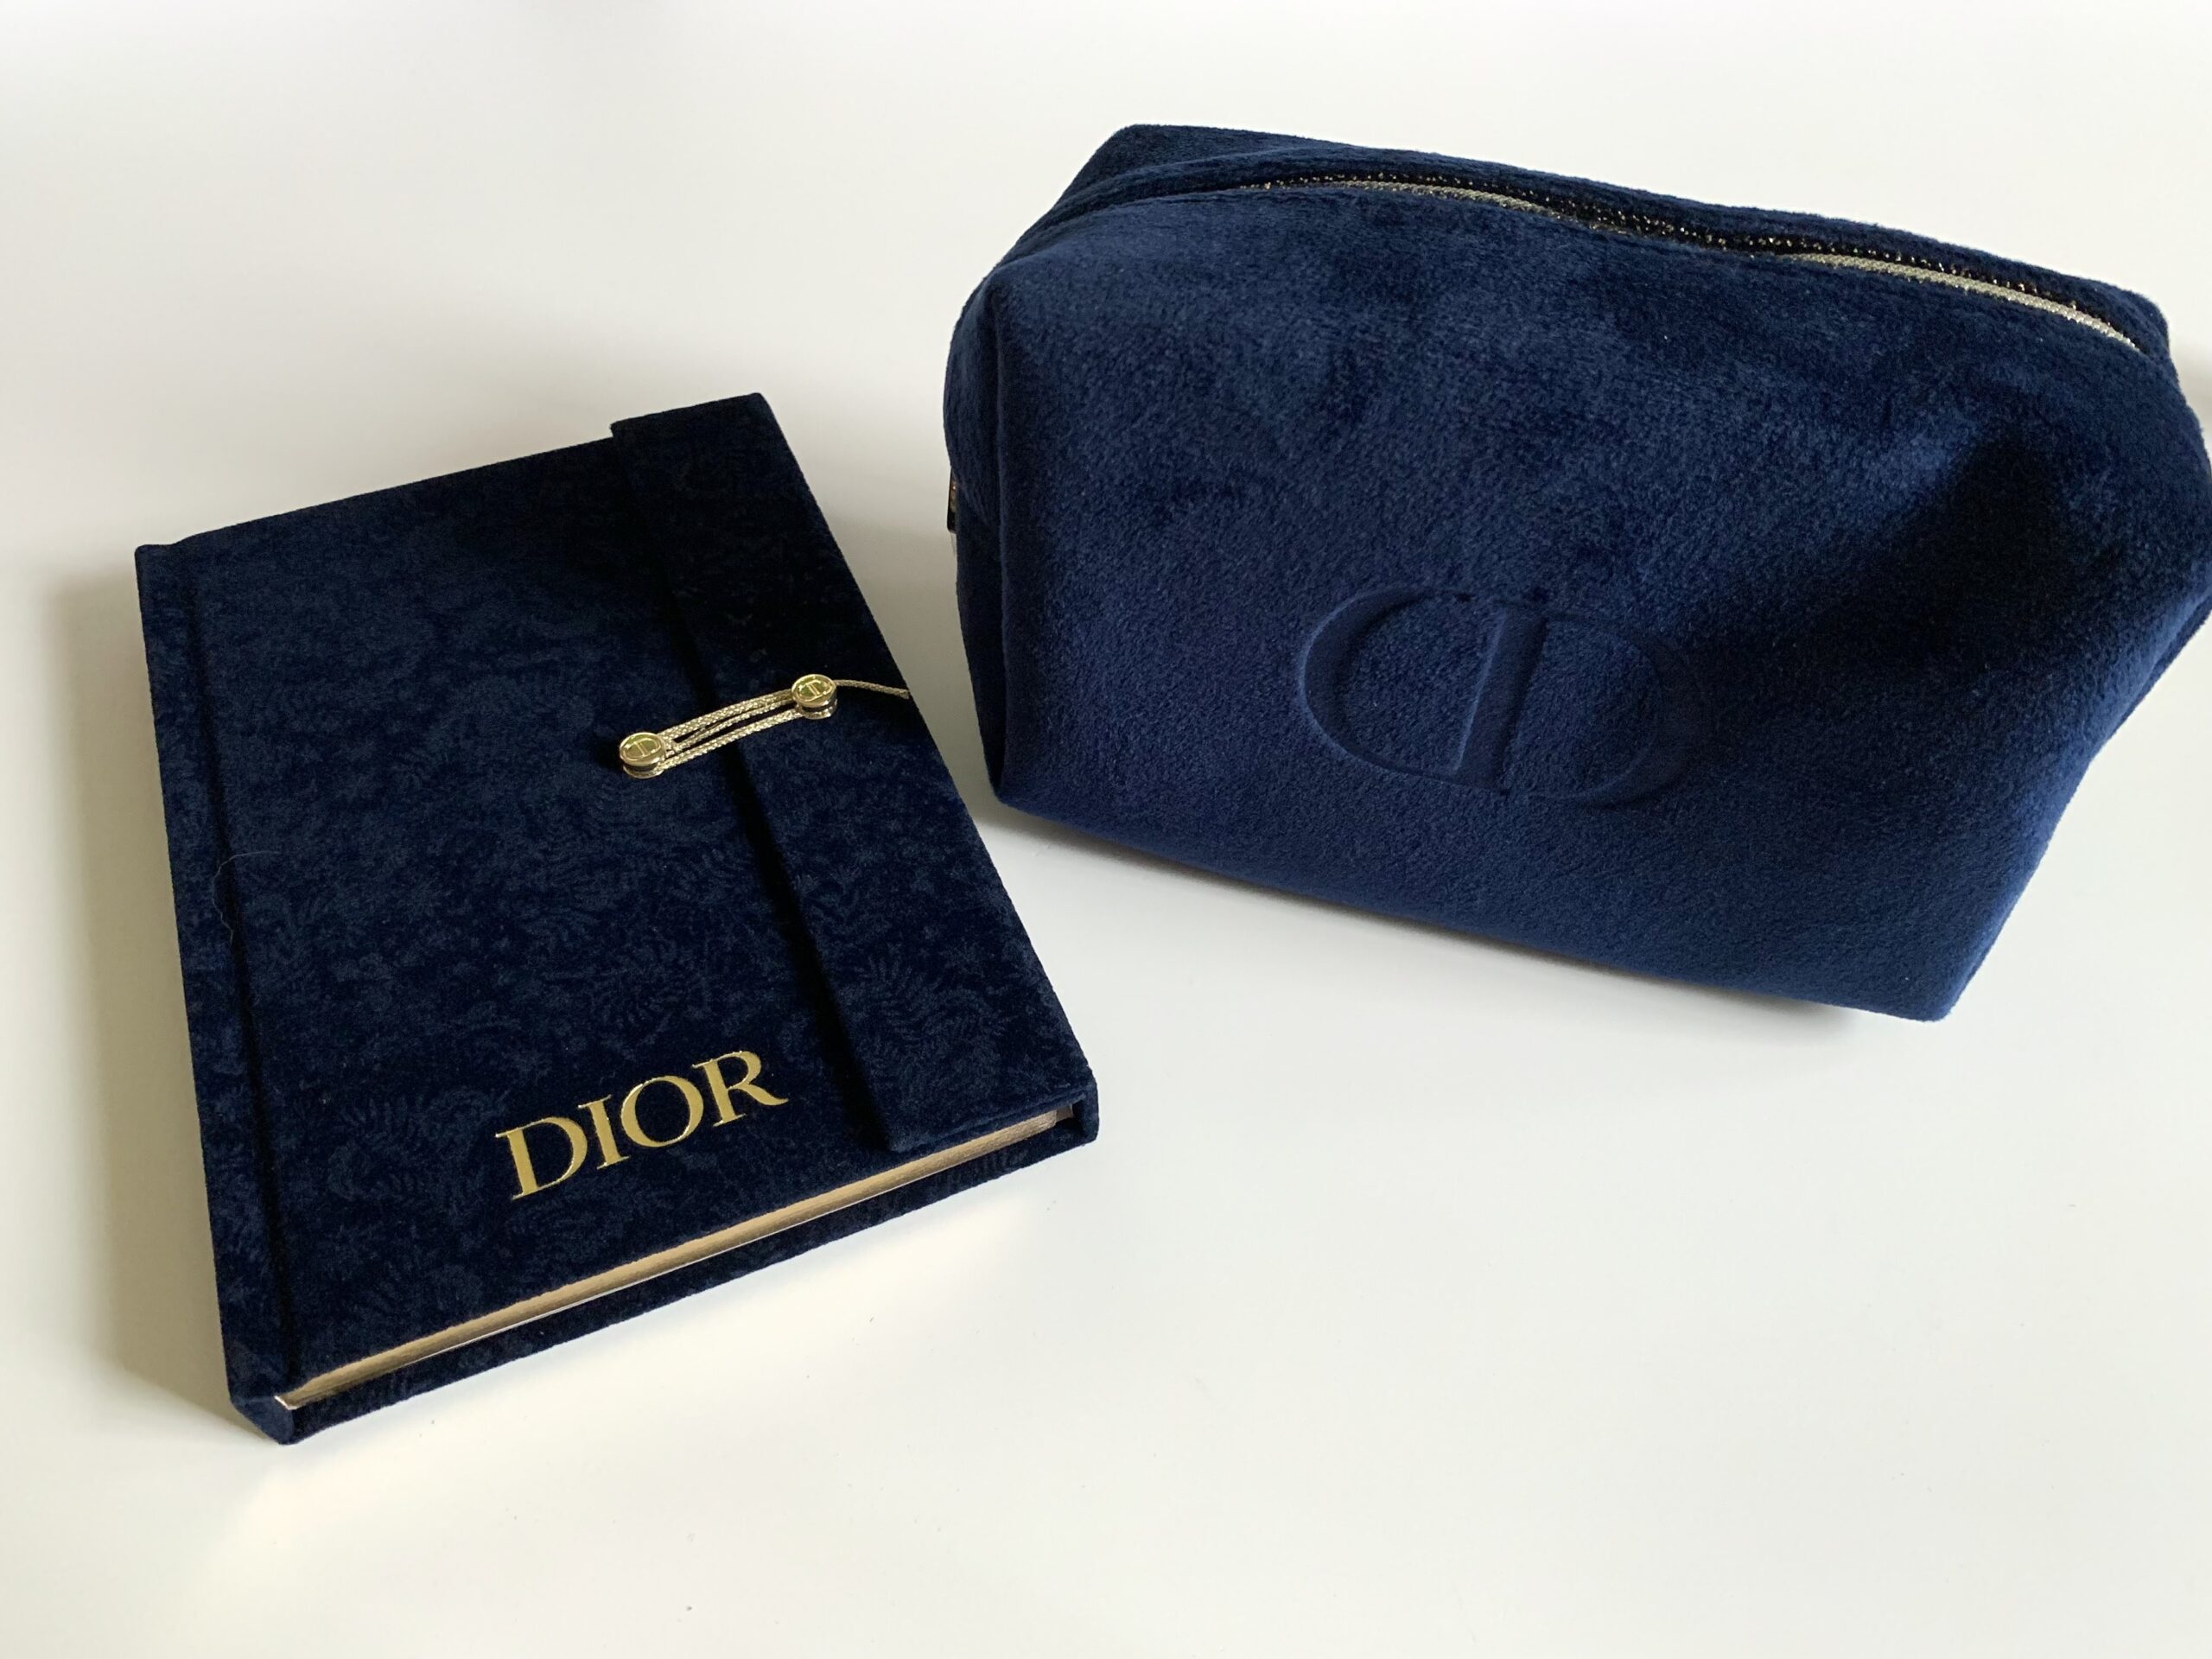 Dior10月の最新ノベルティ、ノートとポーチもらってきた！【ディオール・2021年秋】 – AyasStyle